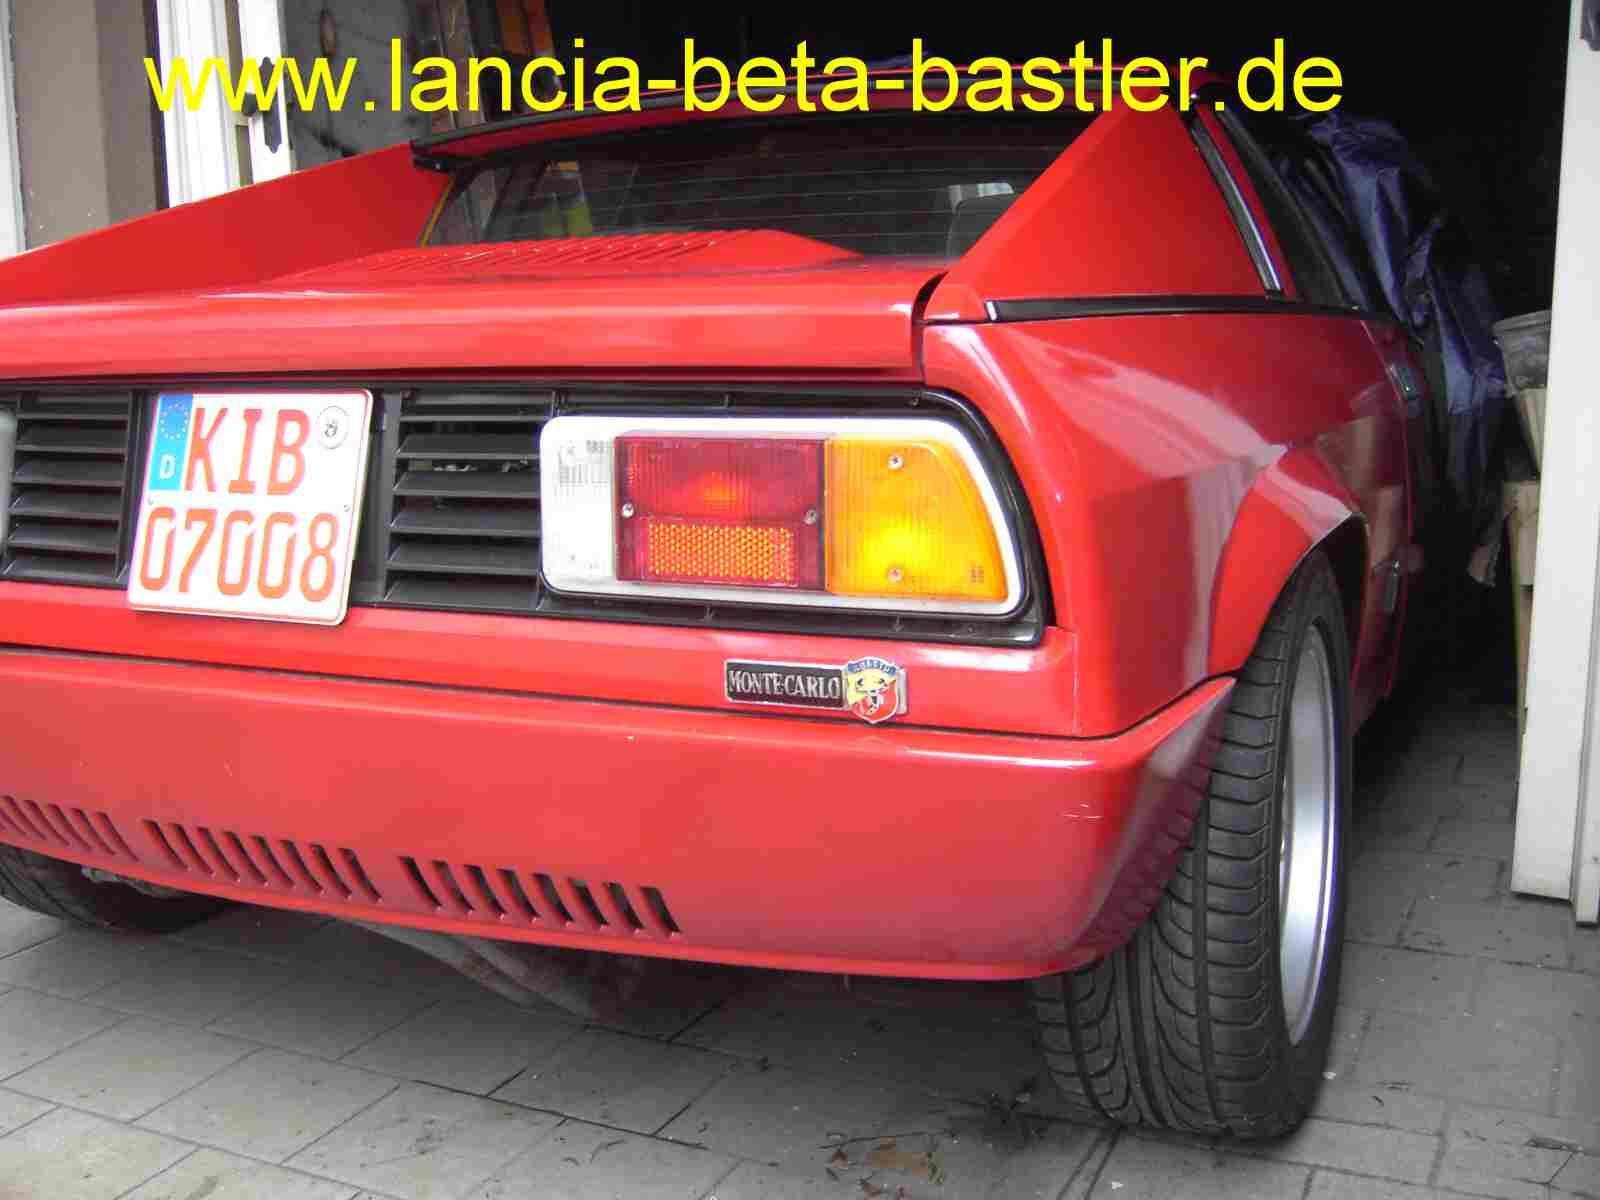 Lancia Montecarlo mit Abarth Schild2